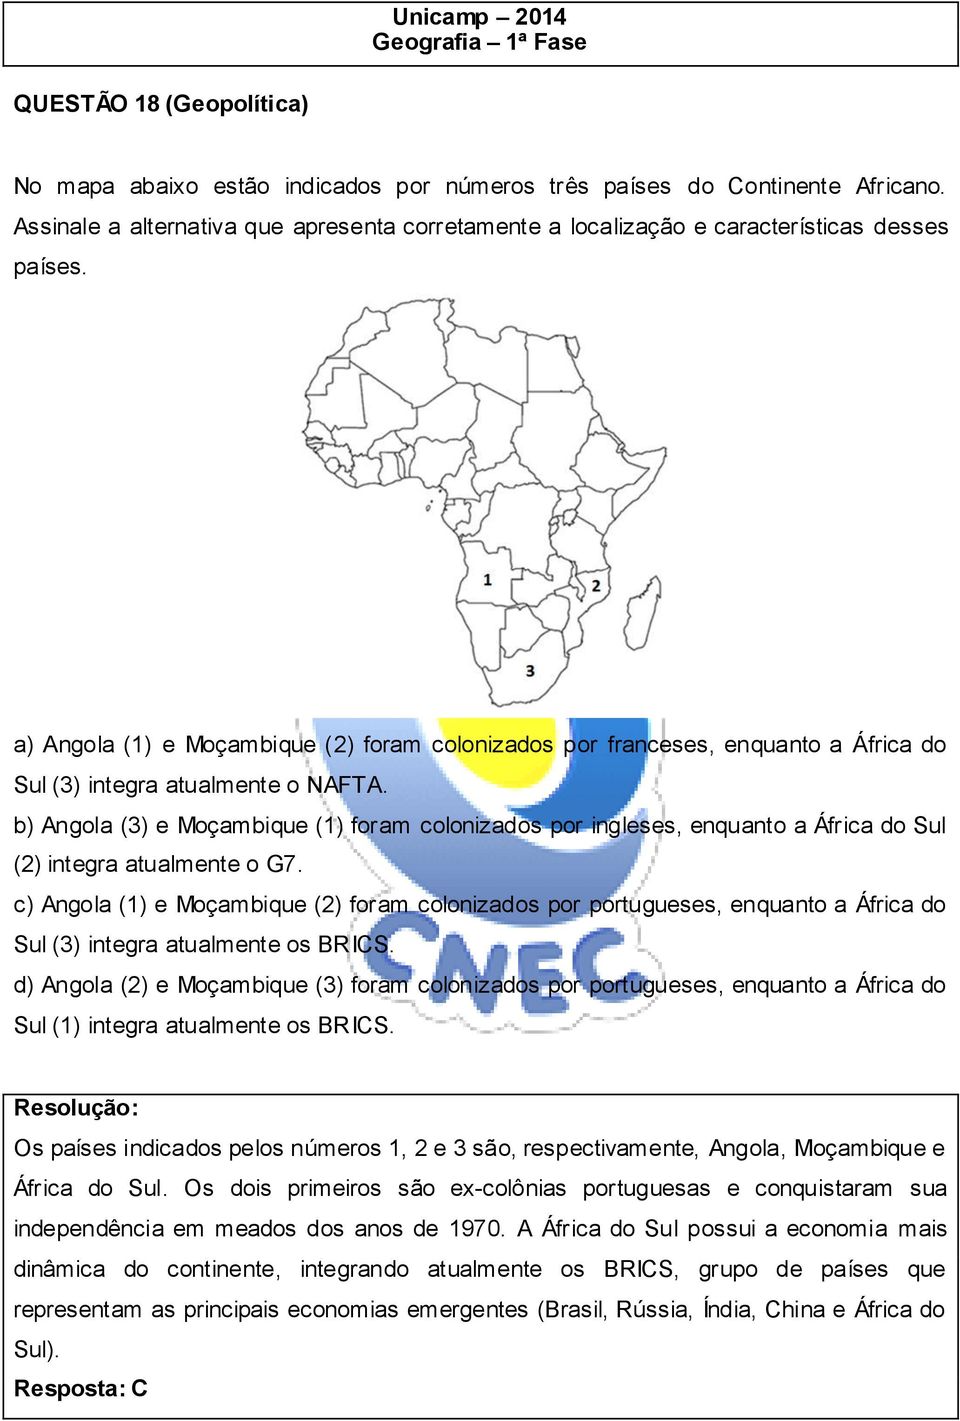 b) Angola (3) e Moçambique (1) foram colonizados por ingleses, enquanto a África do Sul (2) integra atualmente o G7.